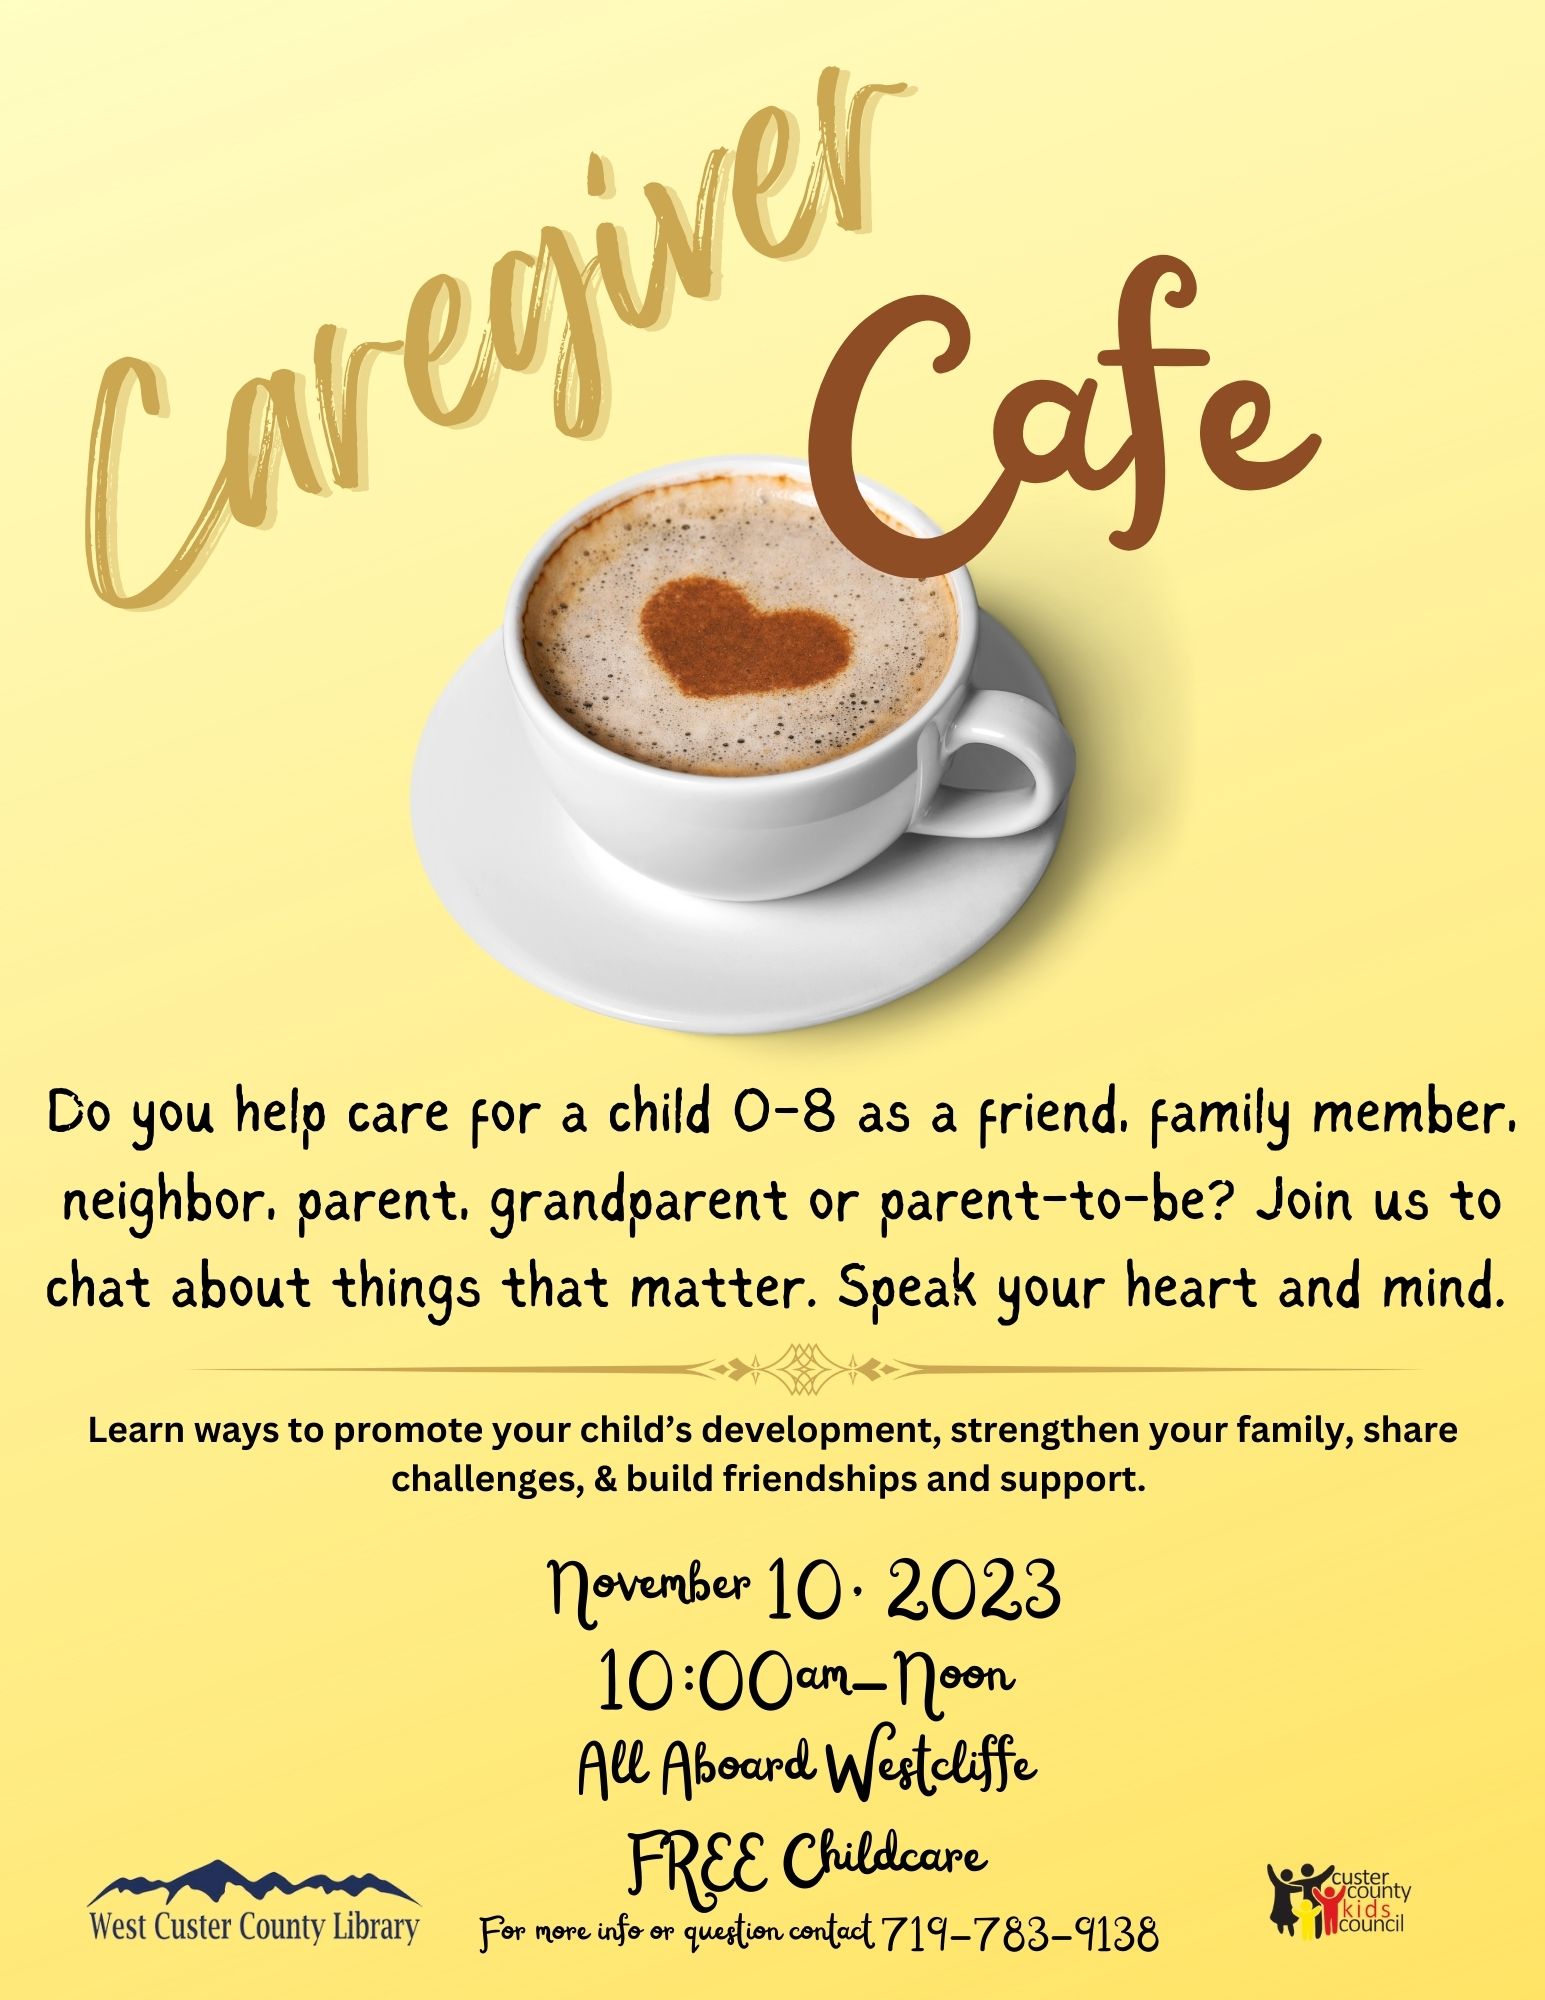 Caregiver Cafe